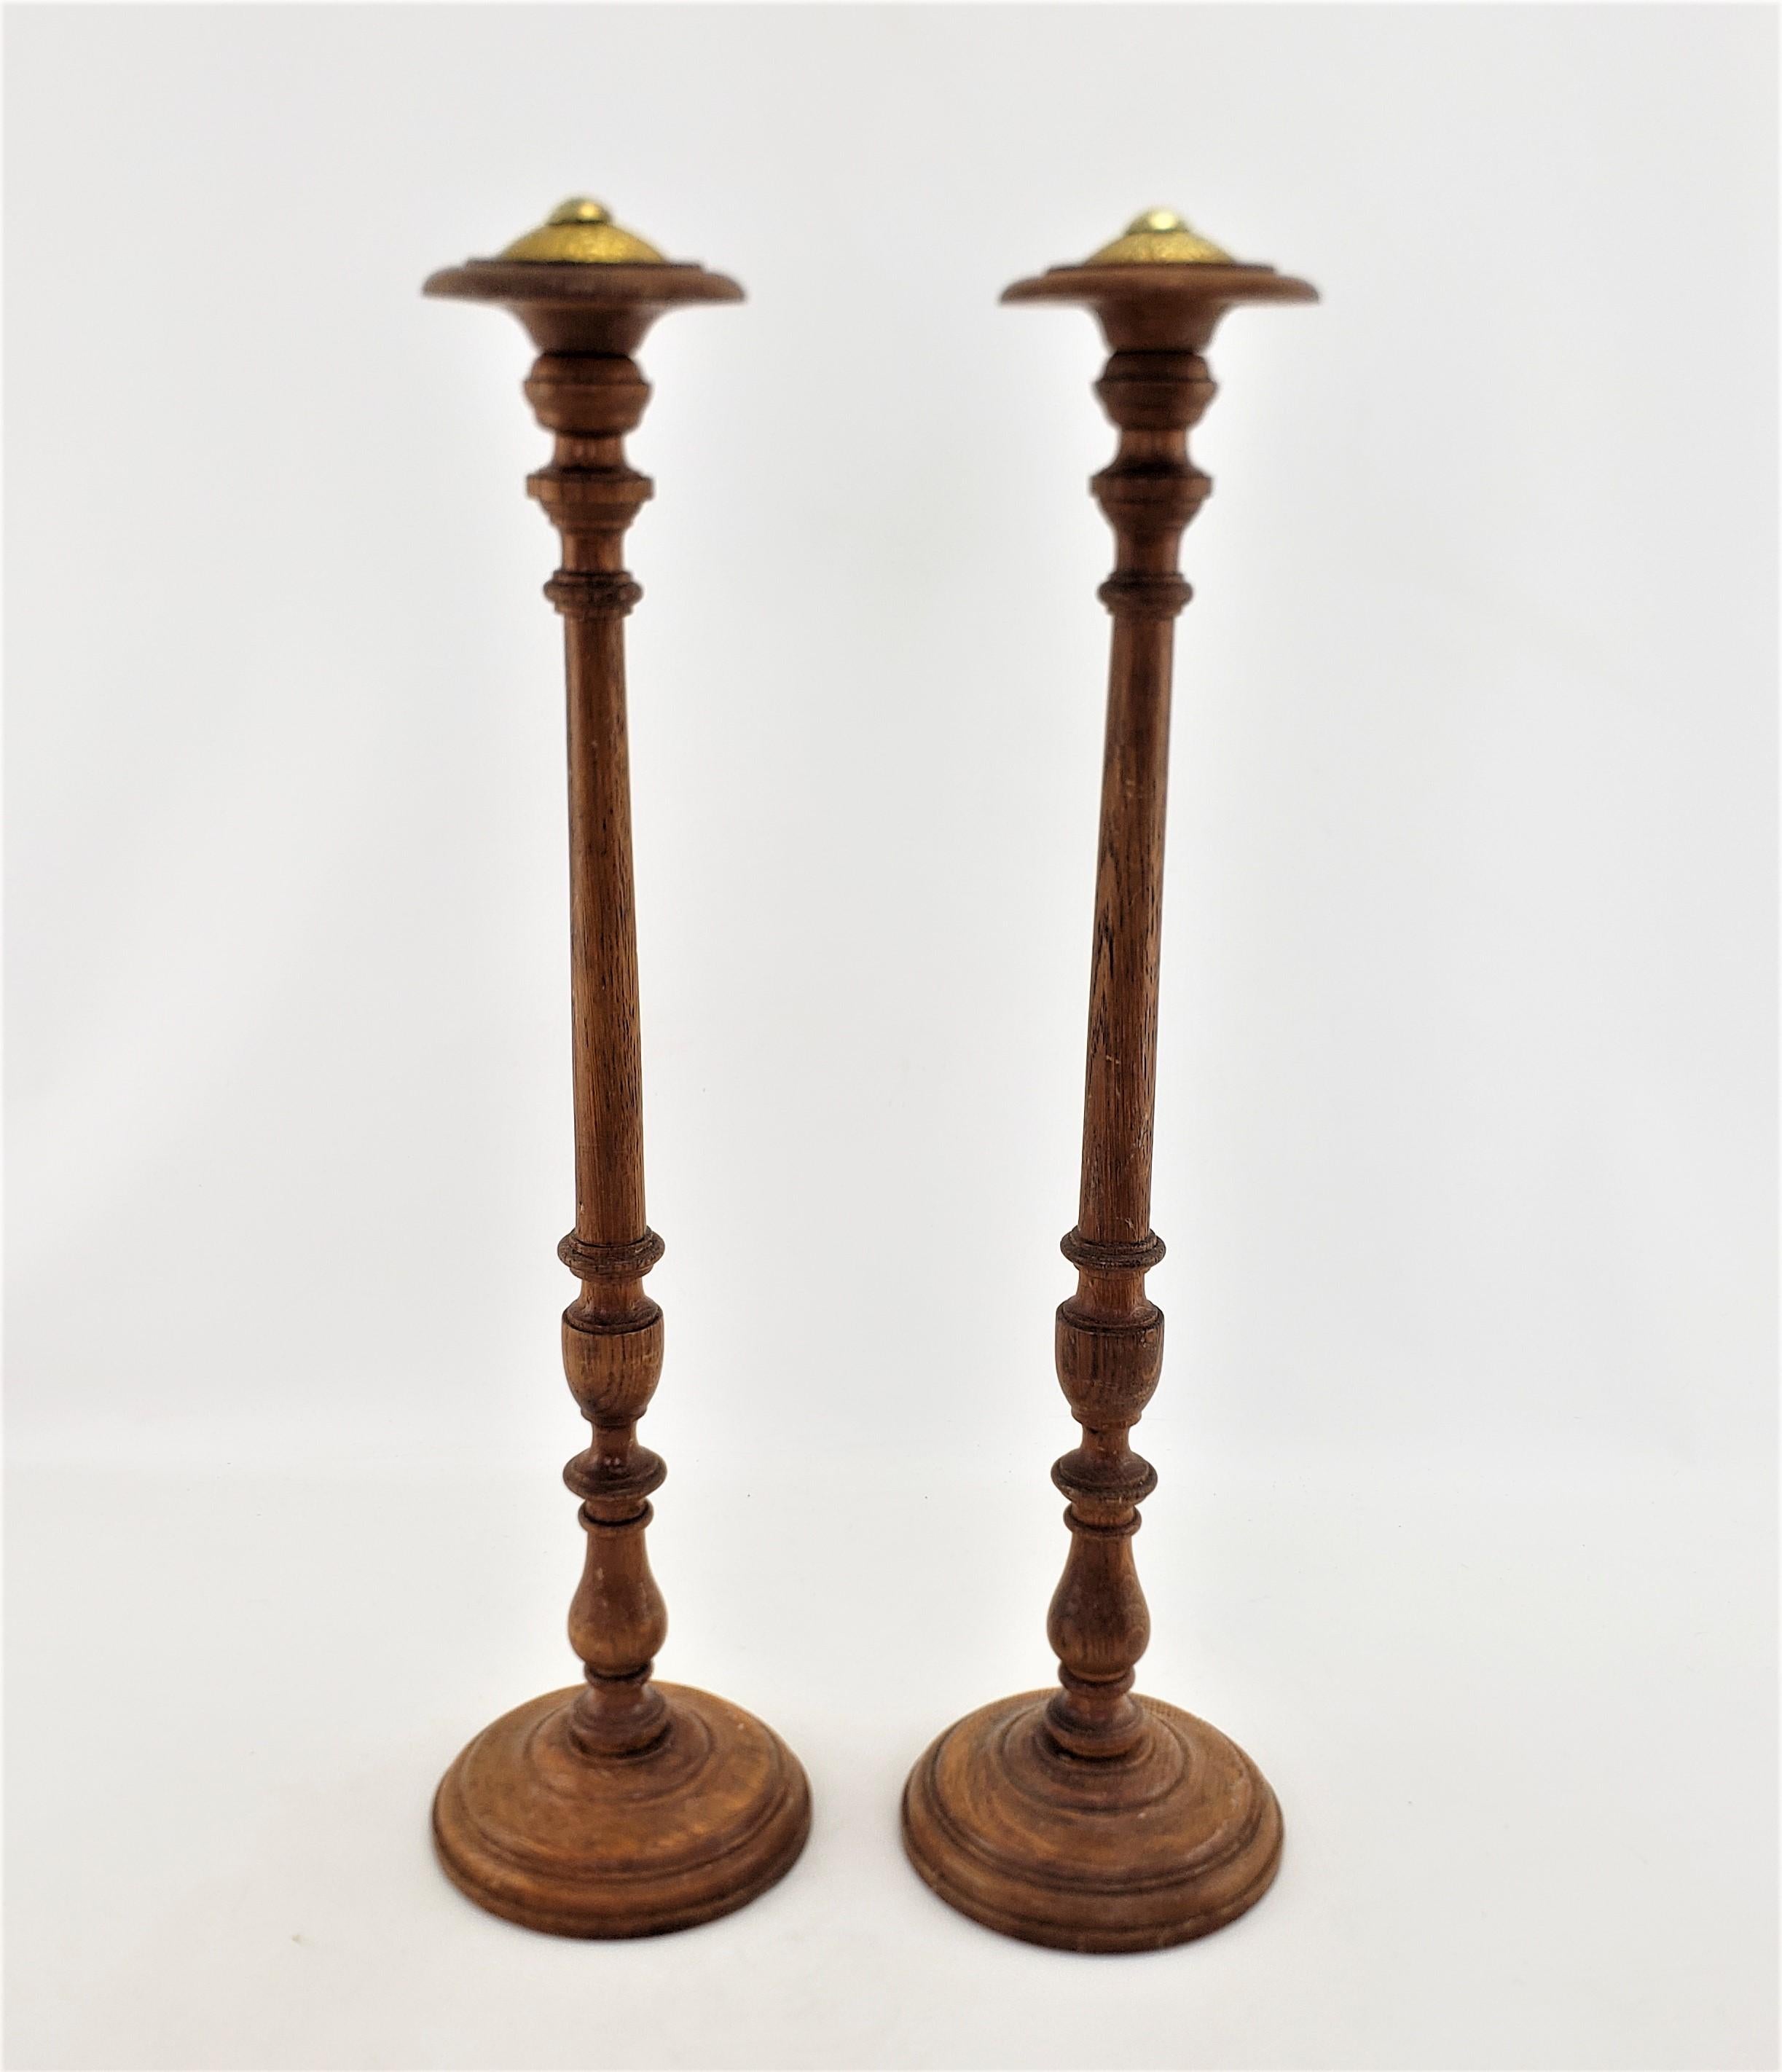 Dieses Paar antiker gedrechselter Hutständer ist unsigniert, stammt aber vermutlich aus England und wurde um 1880 im viktorianischen Stil gefertigt. Die Schäfte und Sockel bestehen aus massivem Eichenholz, sind kunstvoll gedrechselt und mit